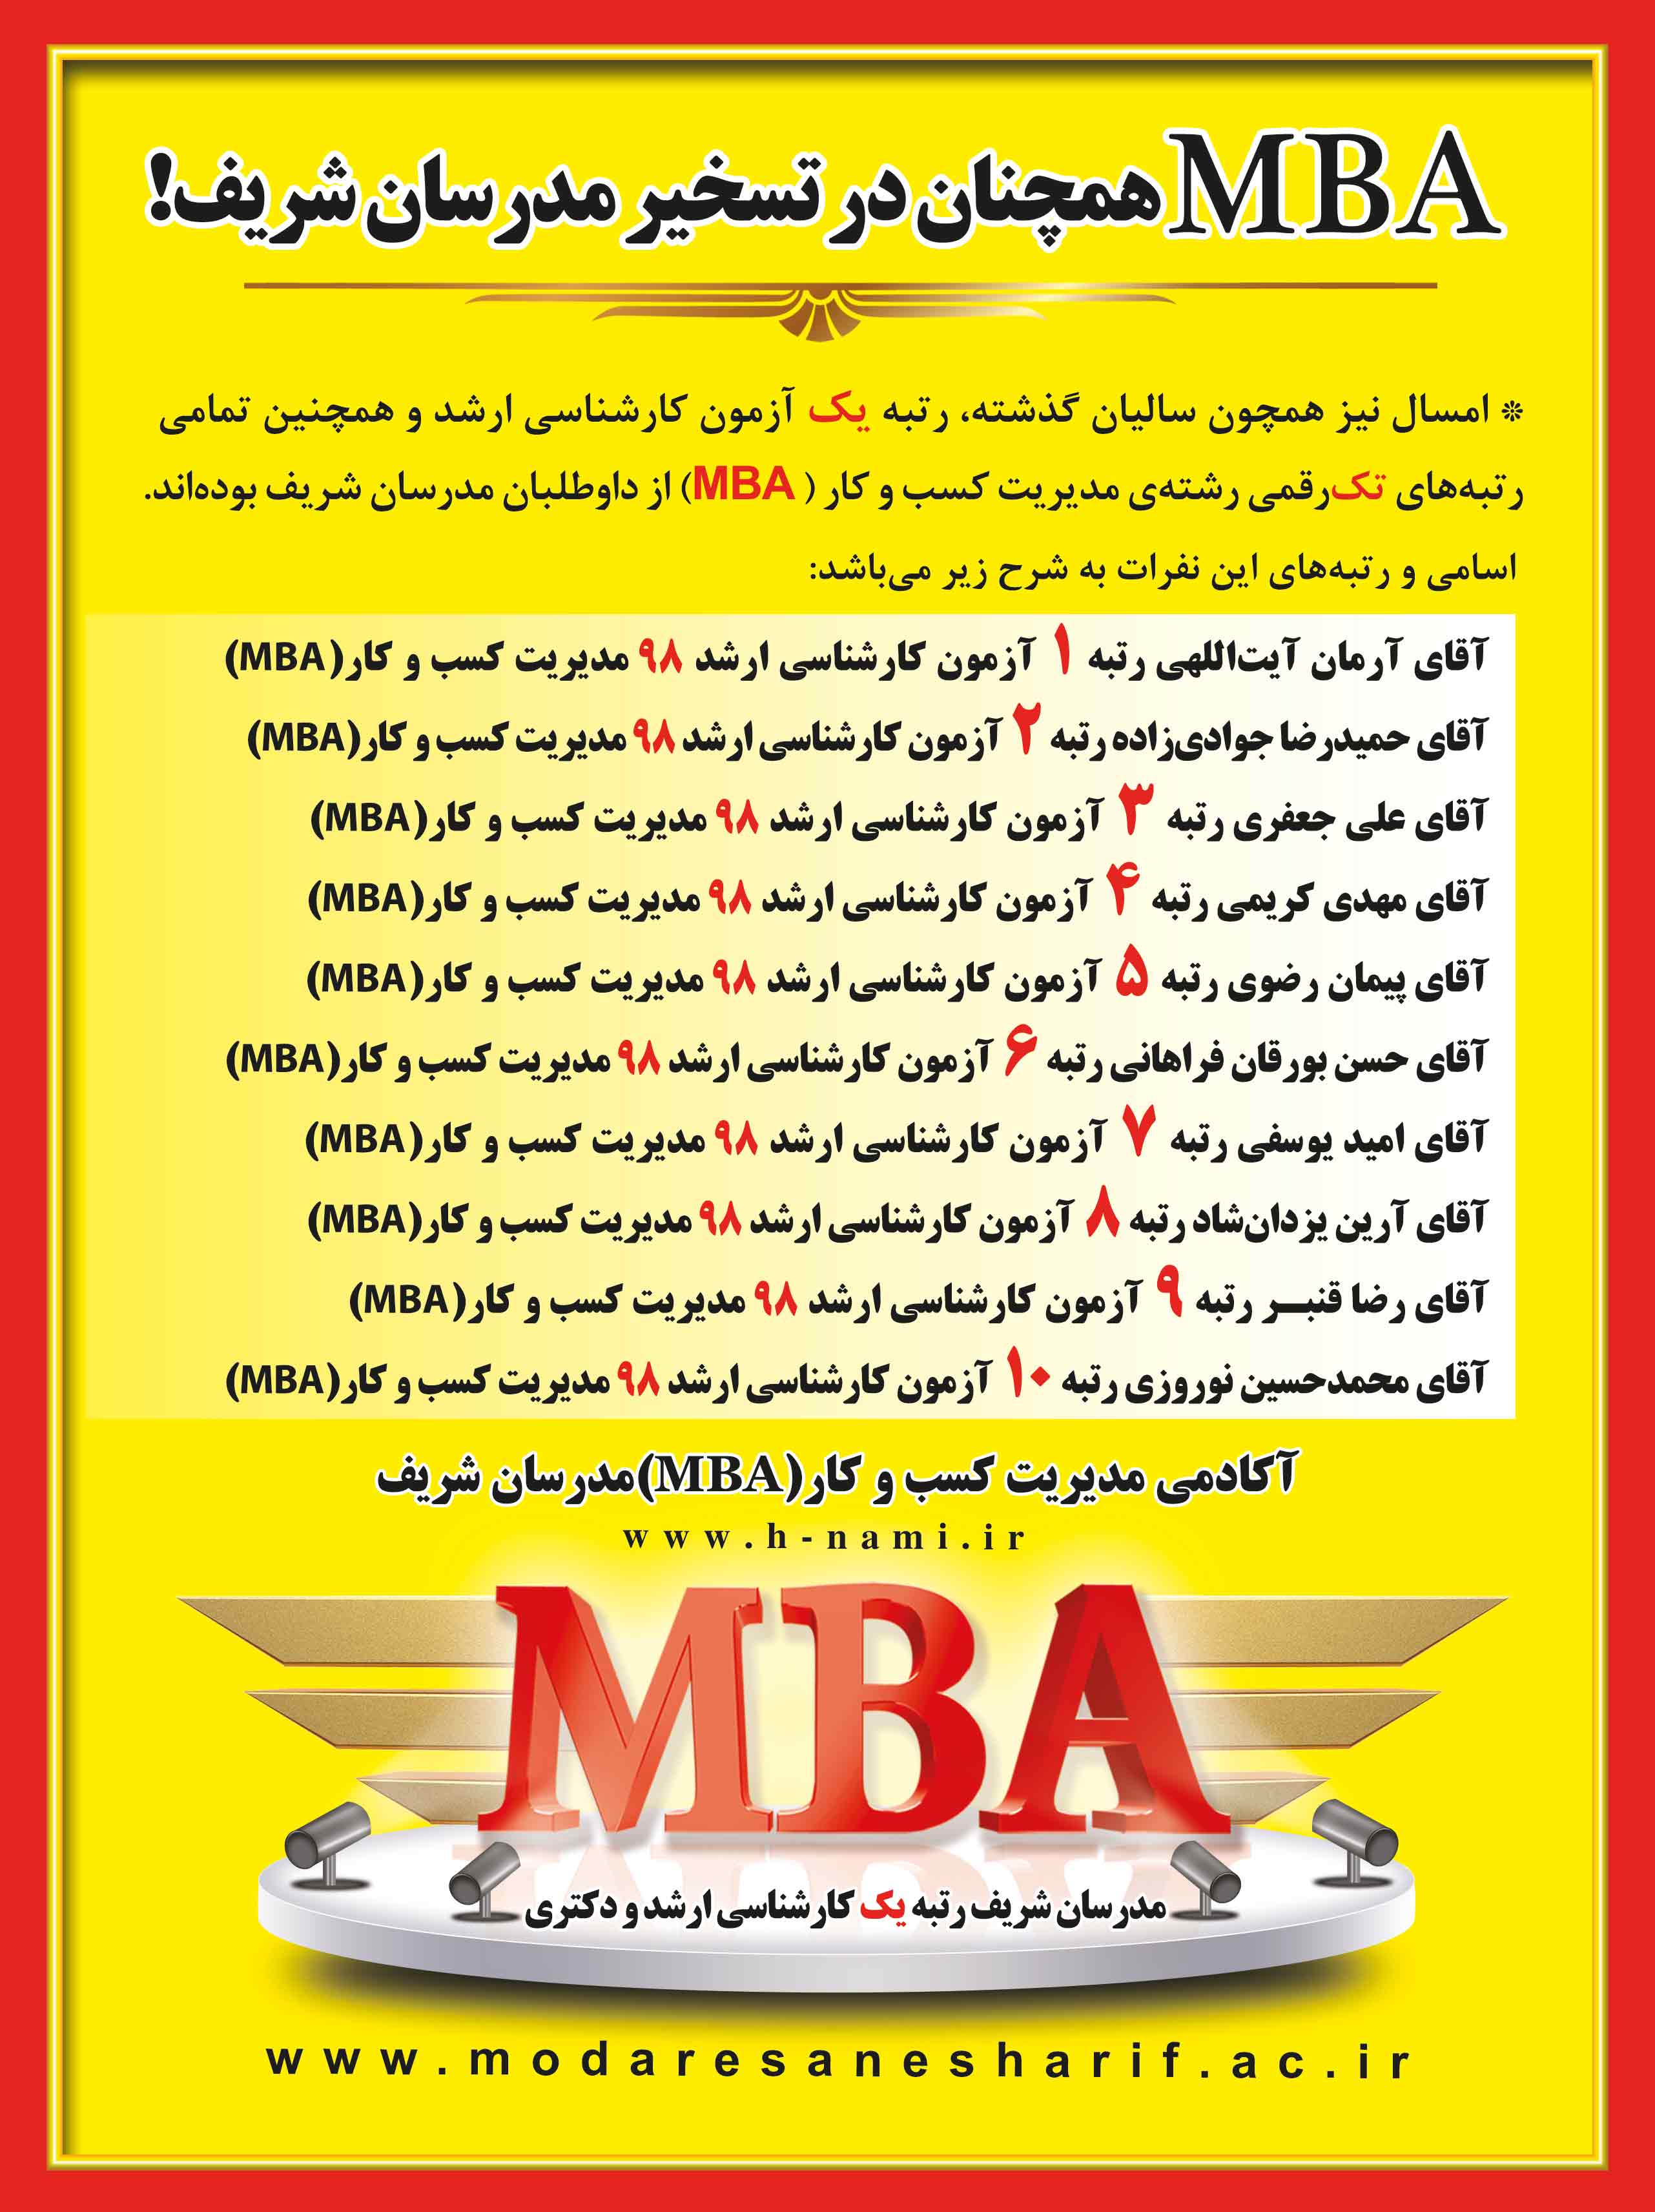 رتبه های برتر رشته مدیریت کسب و کار مدرسان شریف در سال 98(MBA)